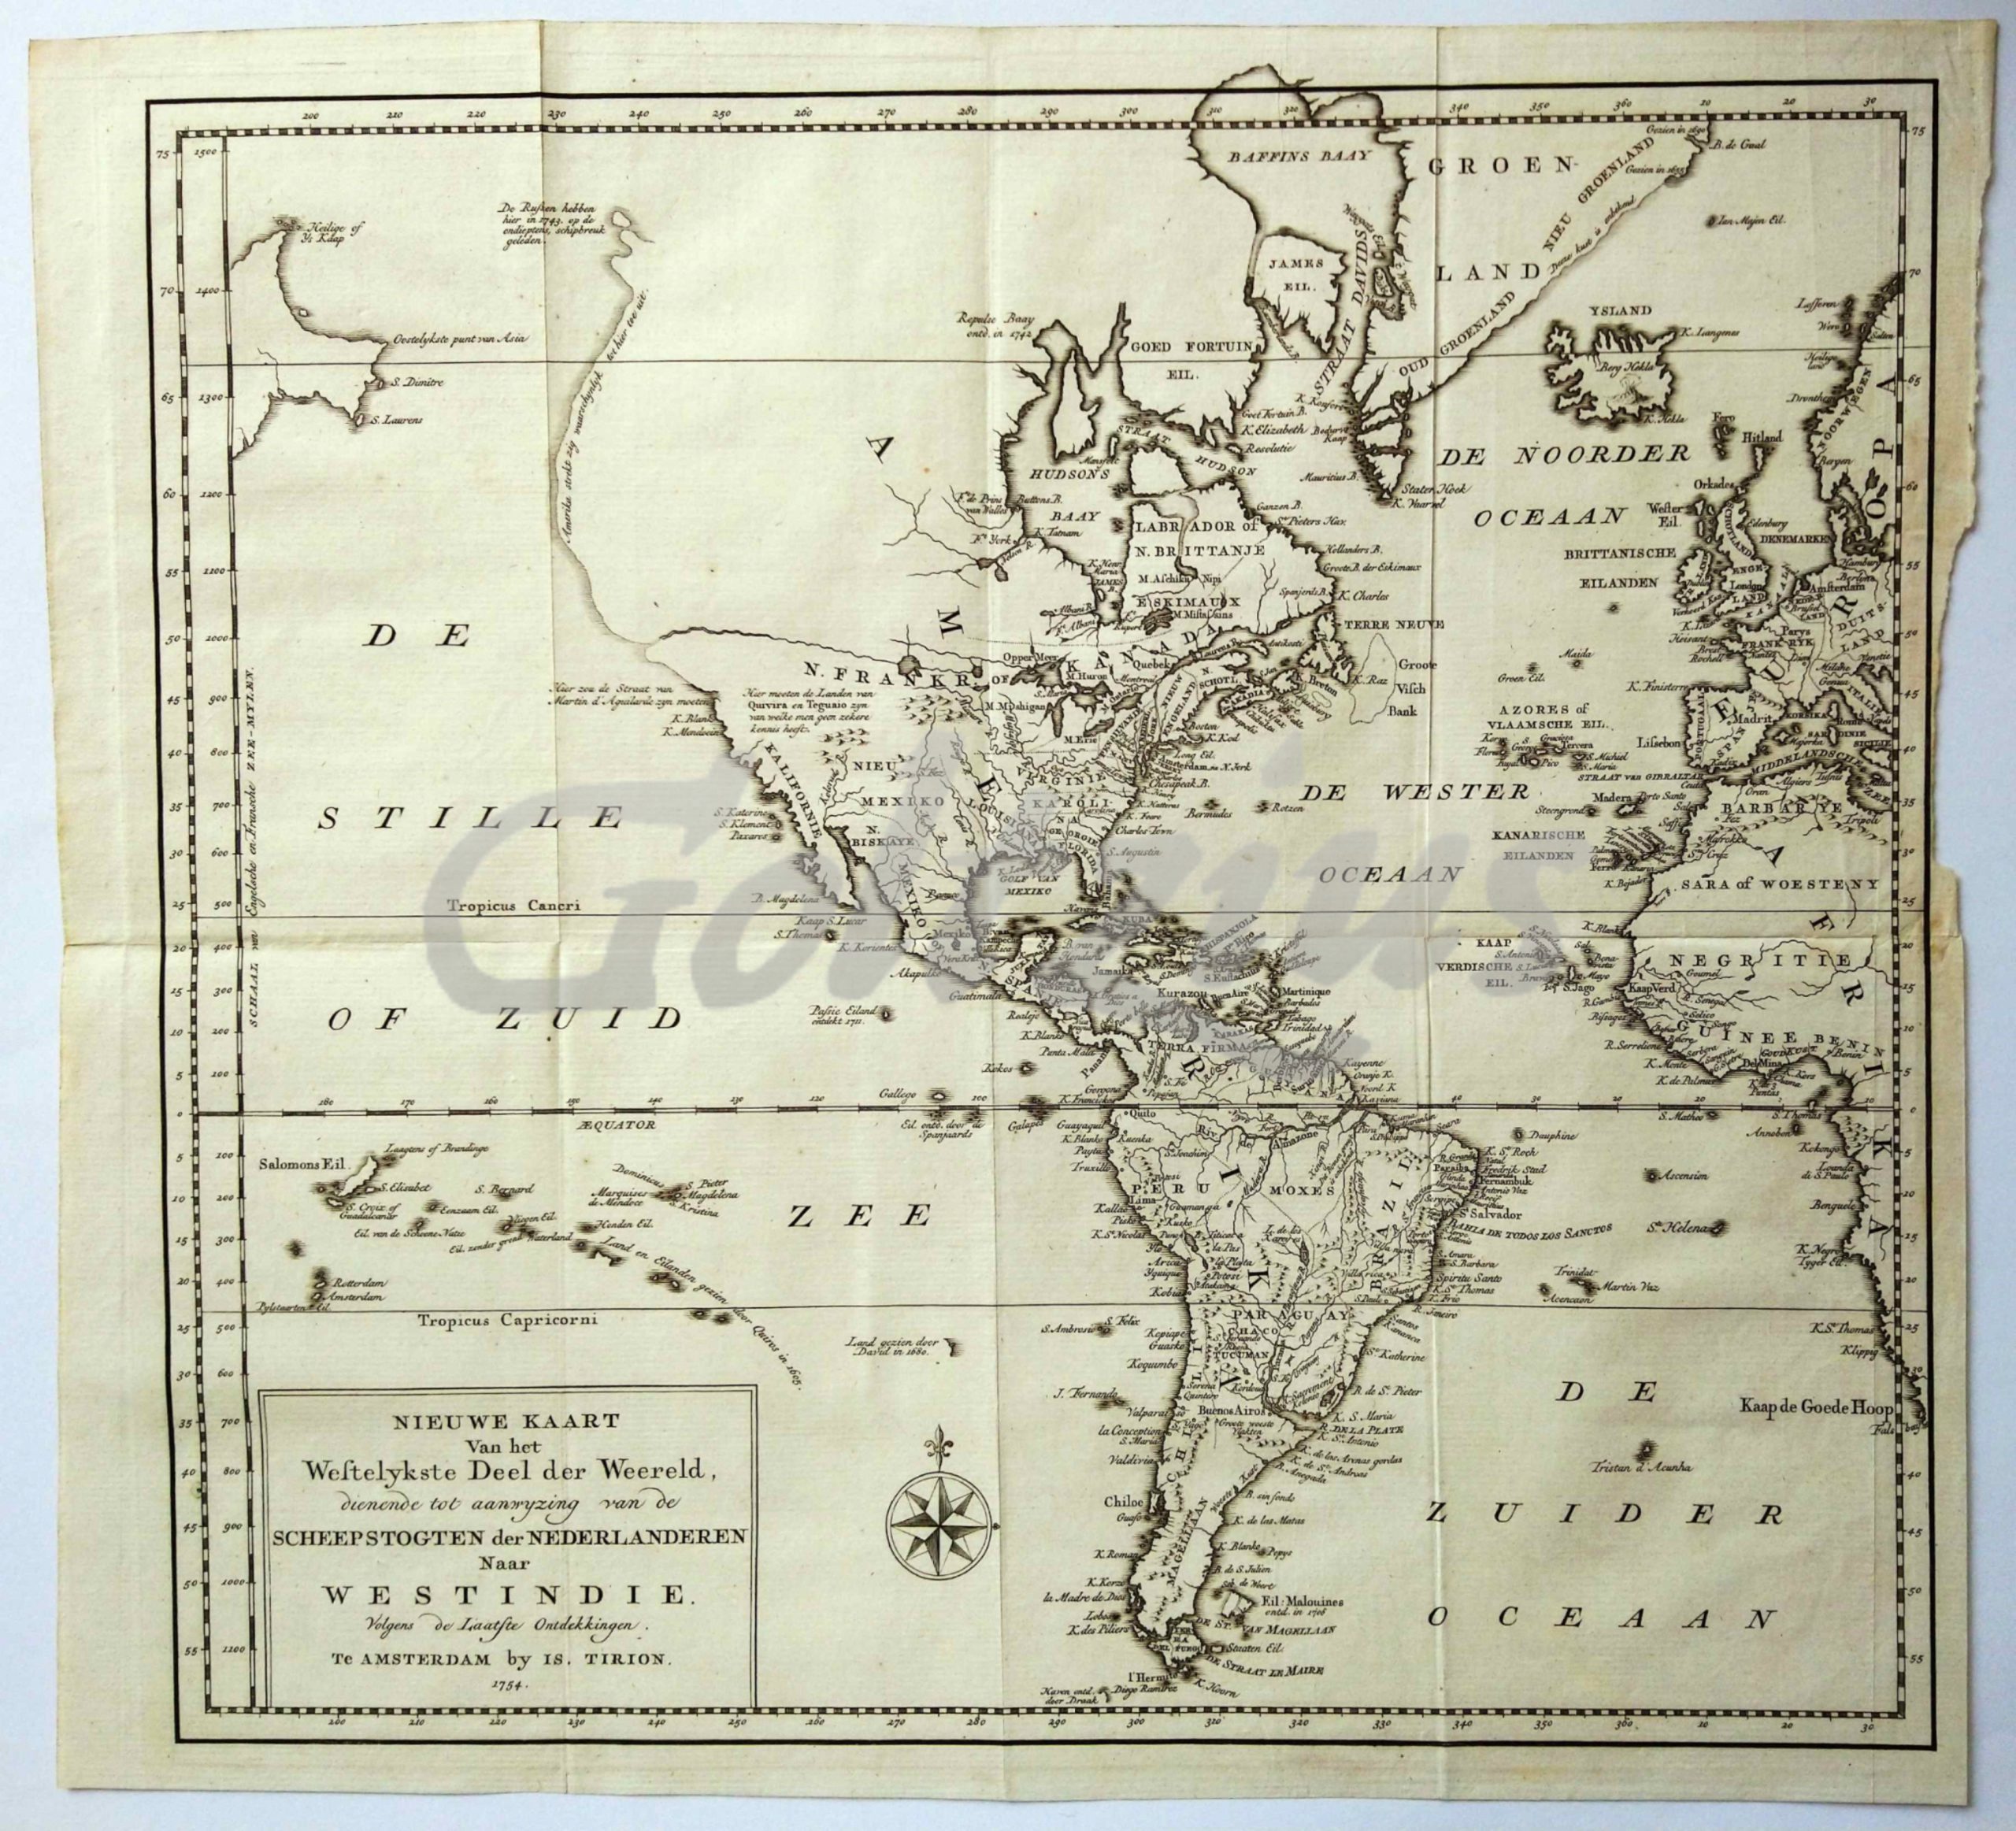 TIRION, IS., Nieuwe kaart van het Westelykste Deel der Weereld, dienende tot aanwijzing van de Scheepstogten der Nederlanderen naar Westindie